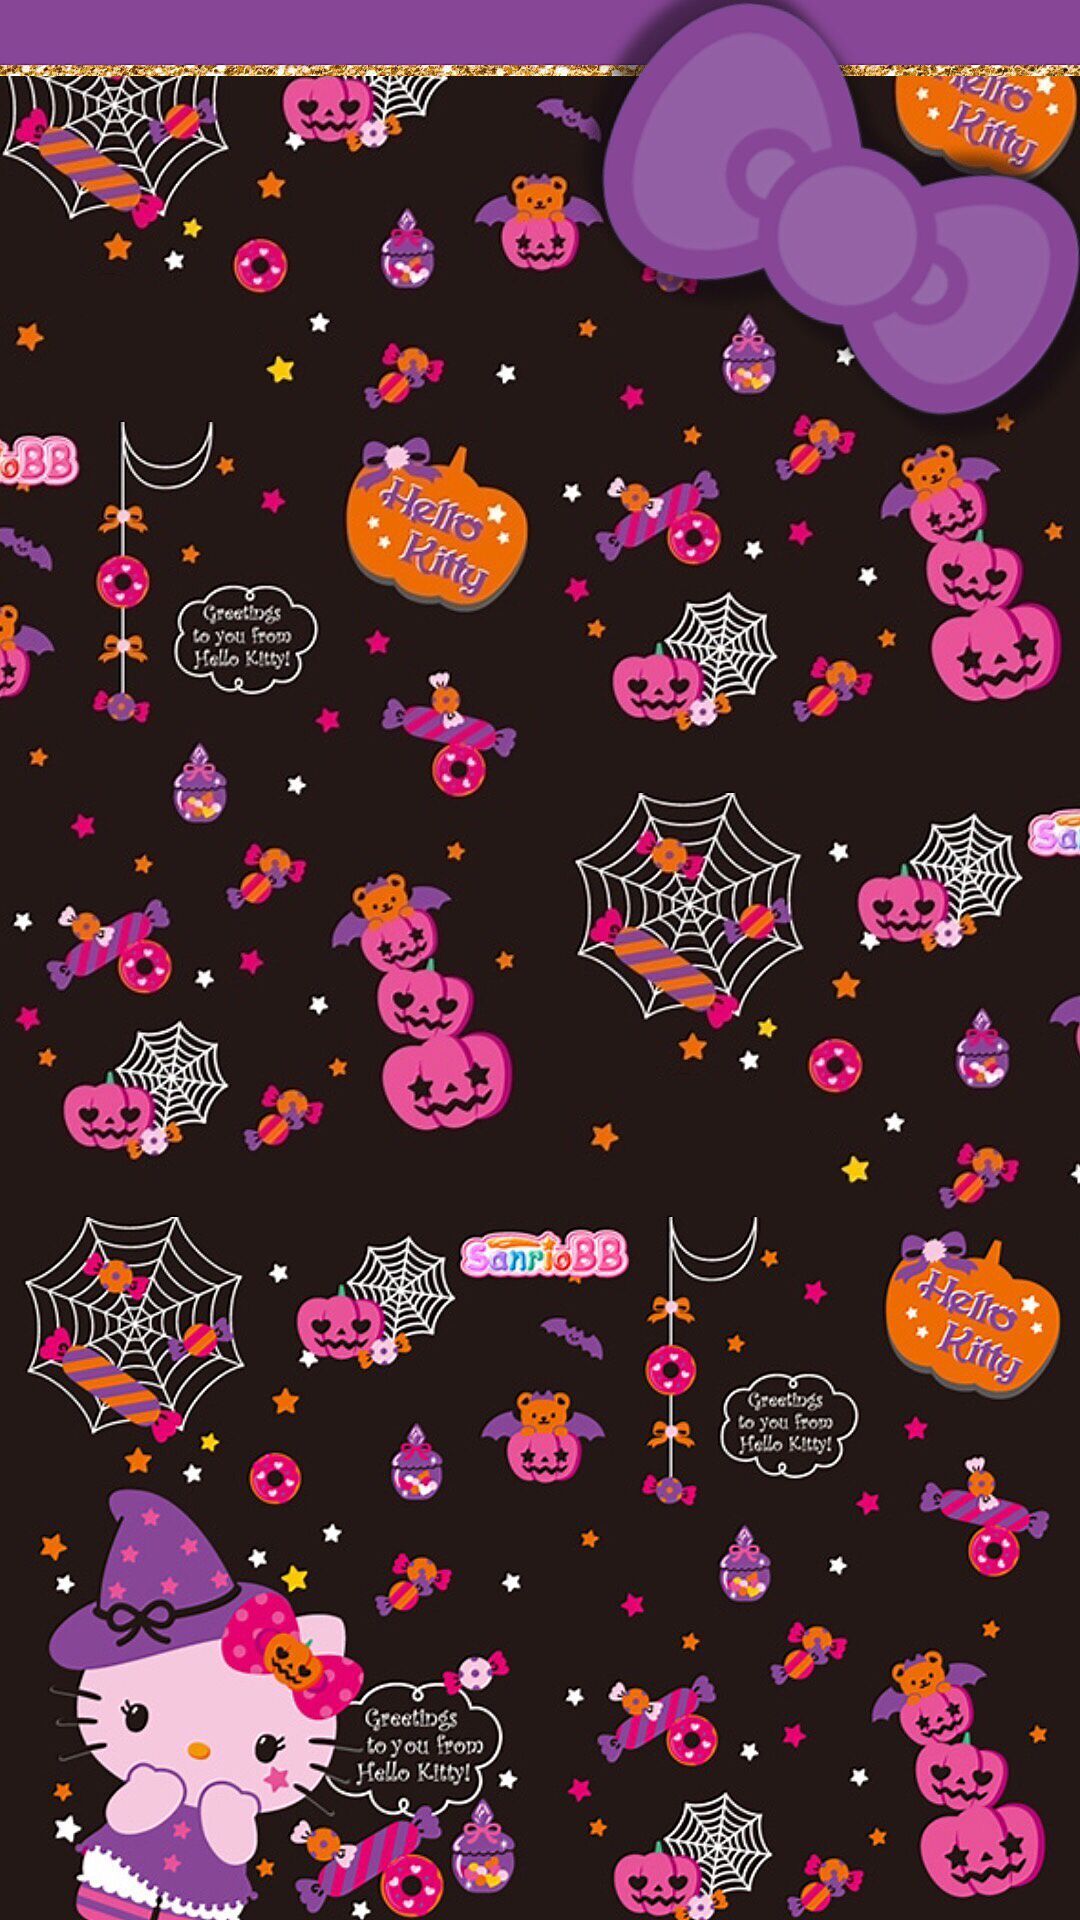 reeseybelle: Halloween HK tjn. Hello kitty halloween wallpaper, Hello kitty background, Hello kitty halloween